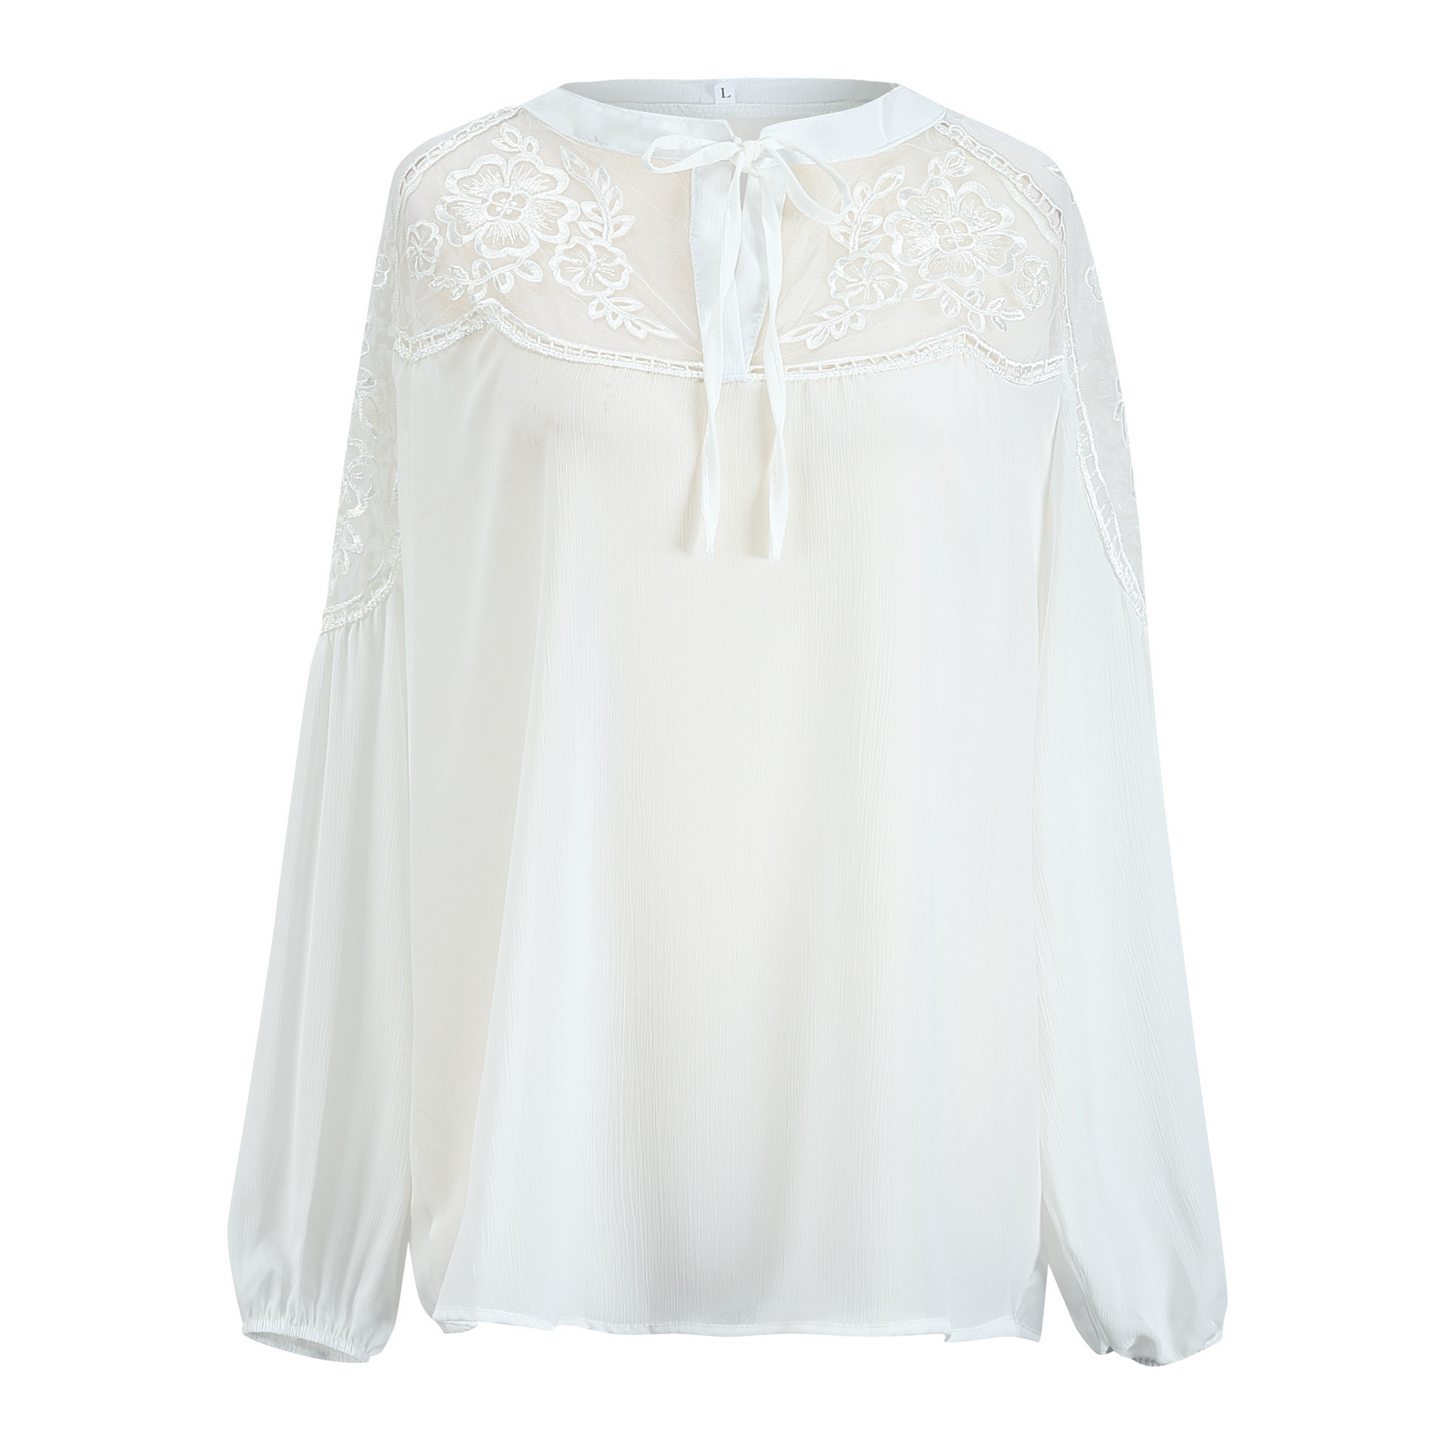 Boho white lace blouse free size Uk8-14blouseLEONORA GYPSY